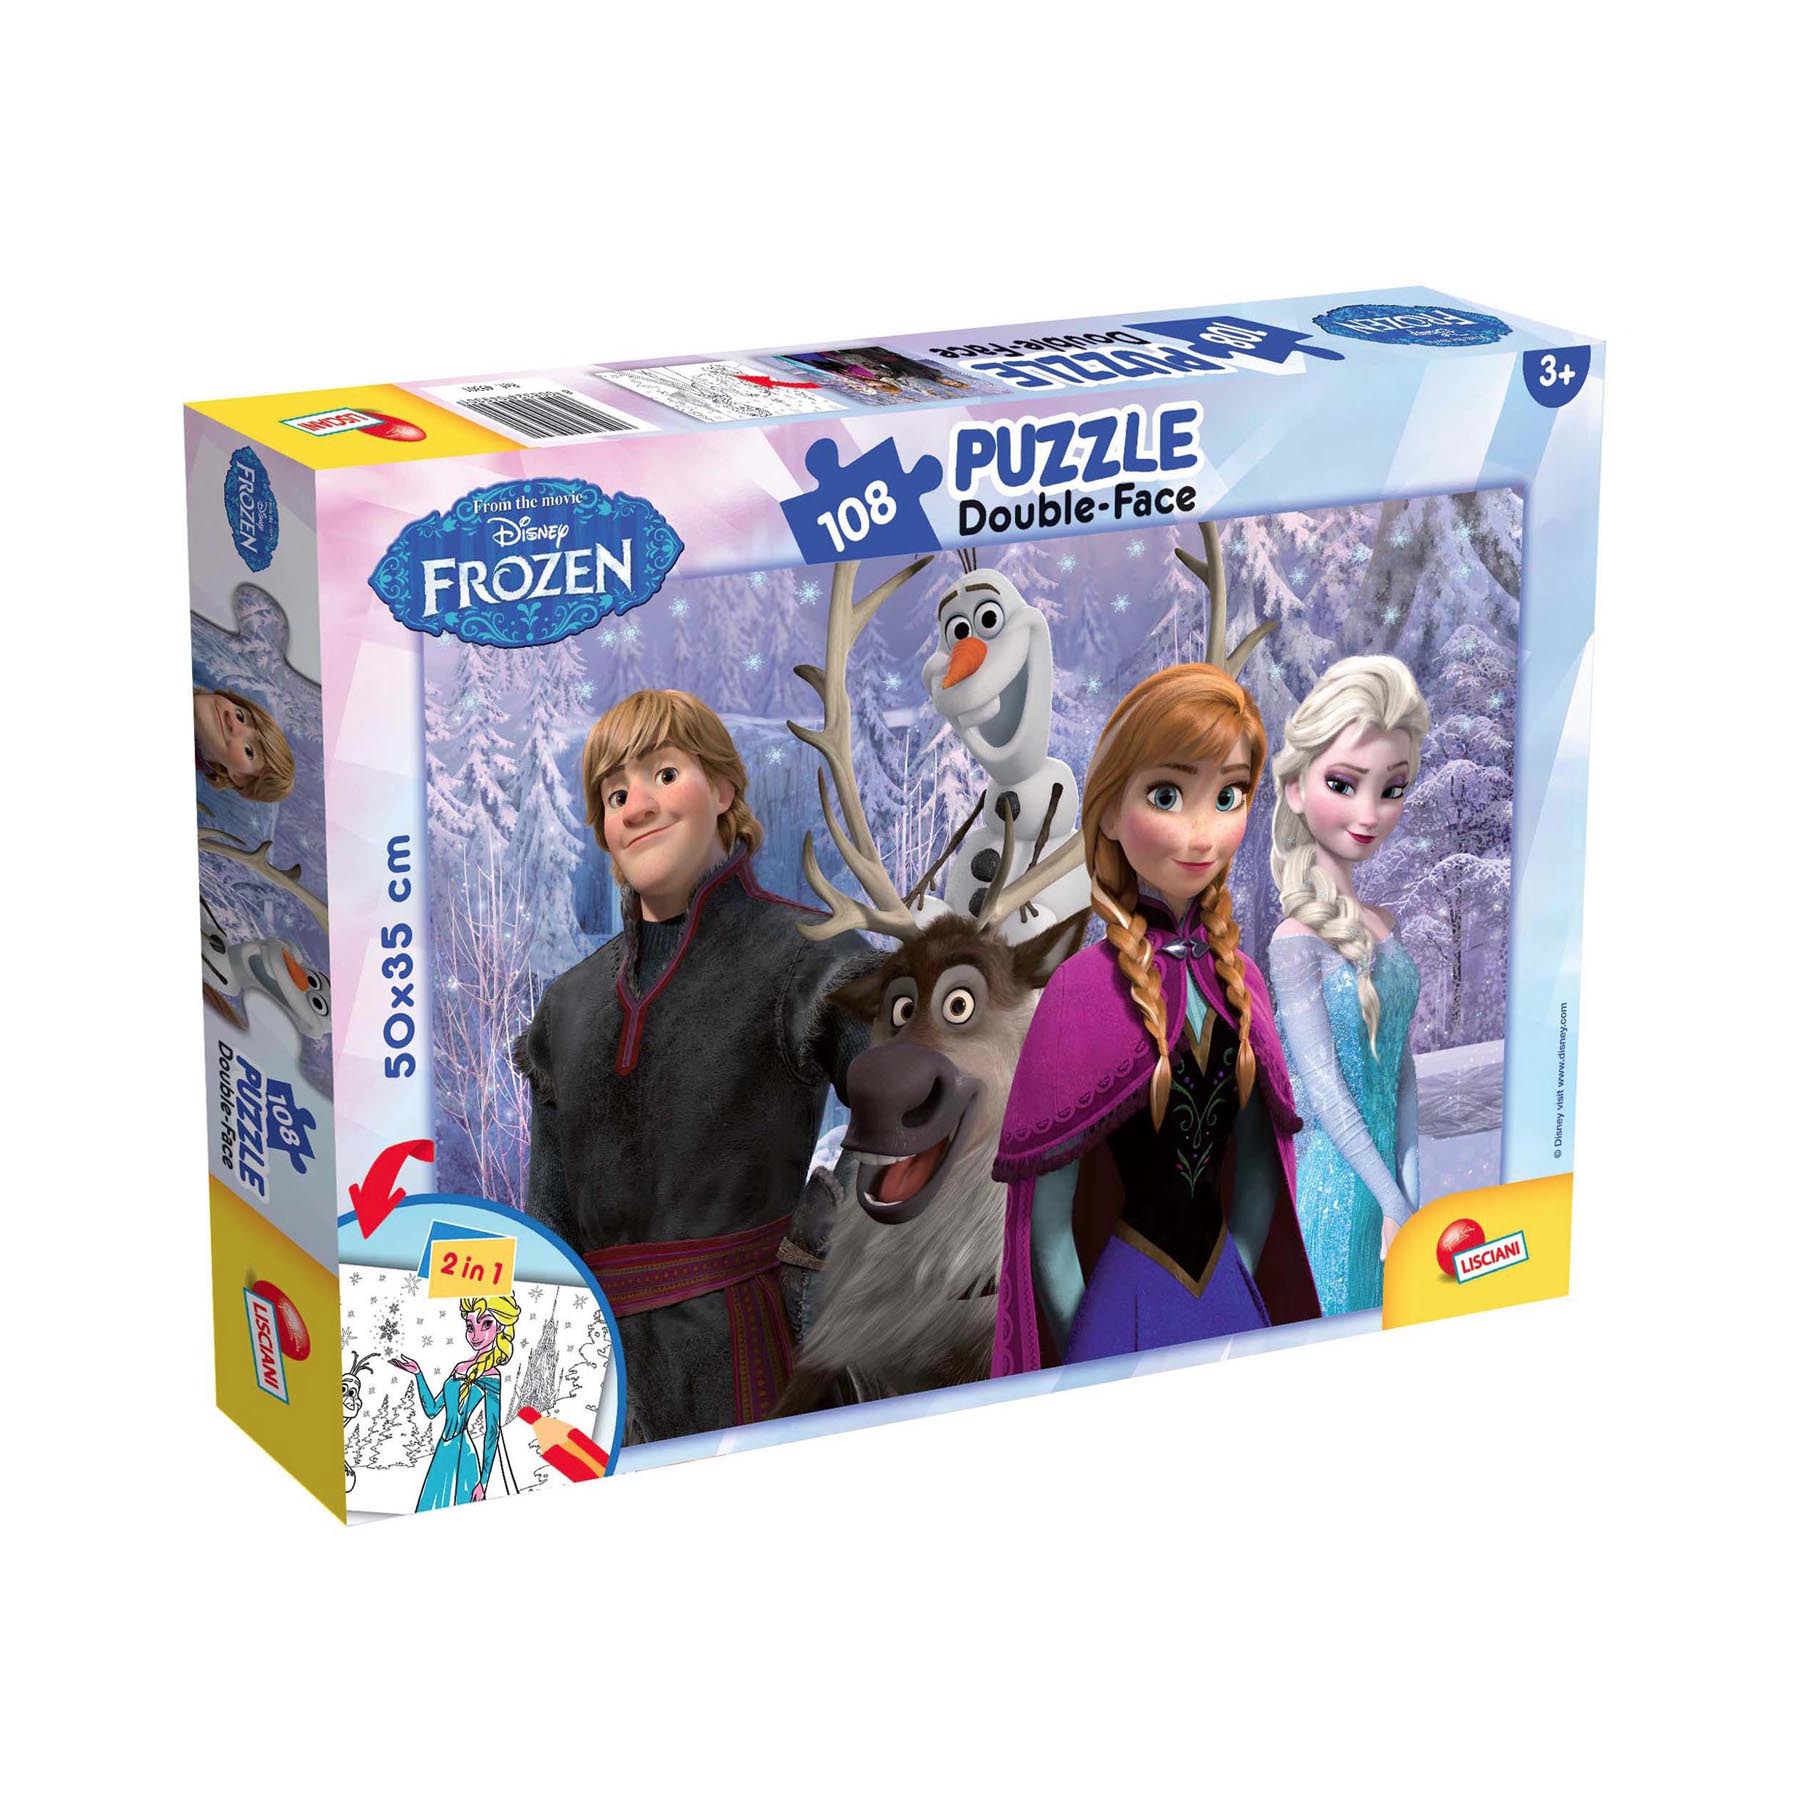 Frozen 108 Puzzle Double Faced